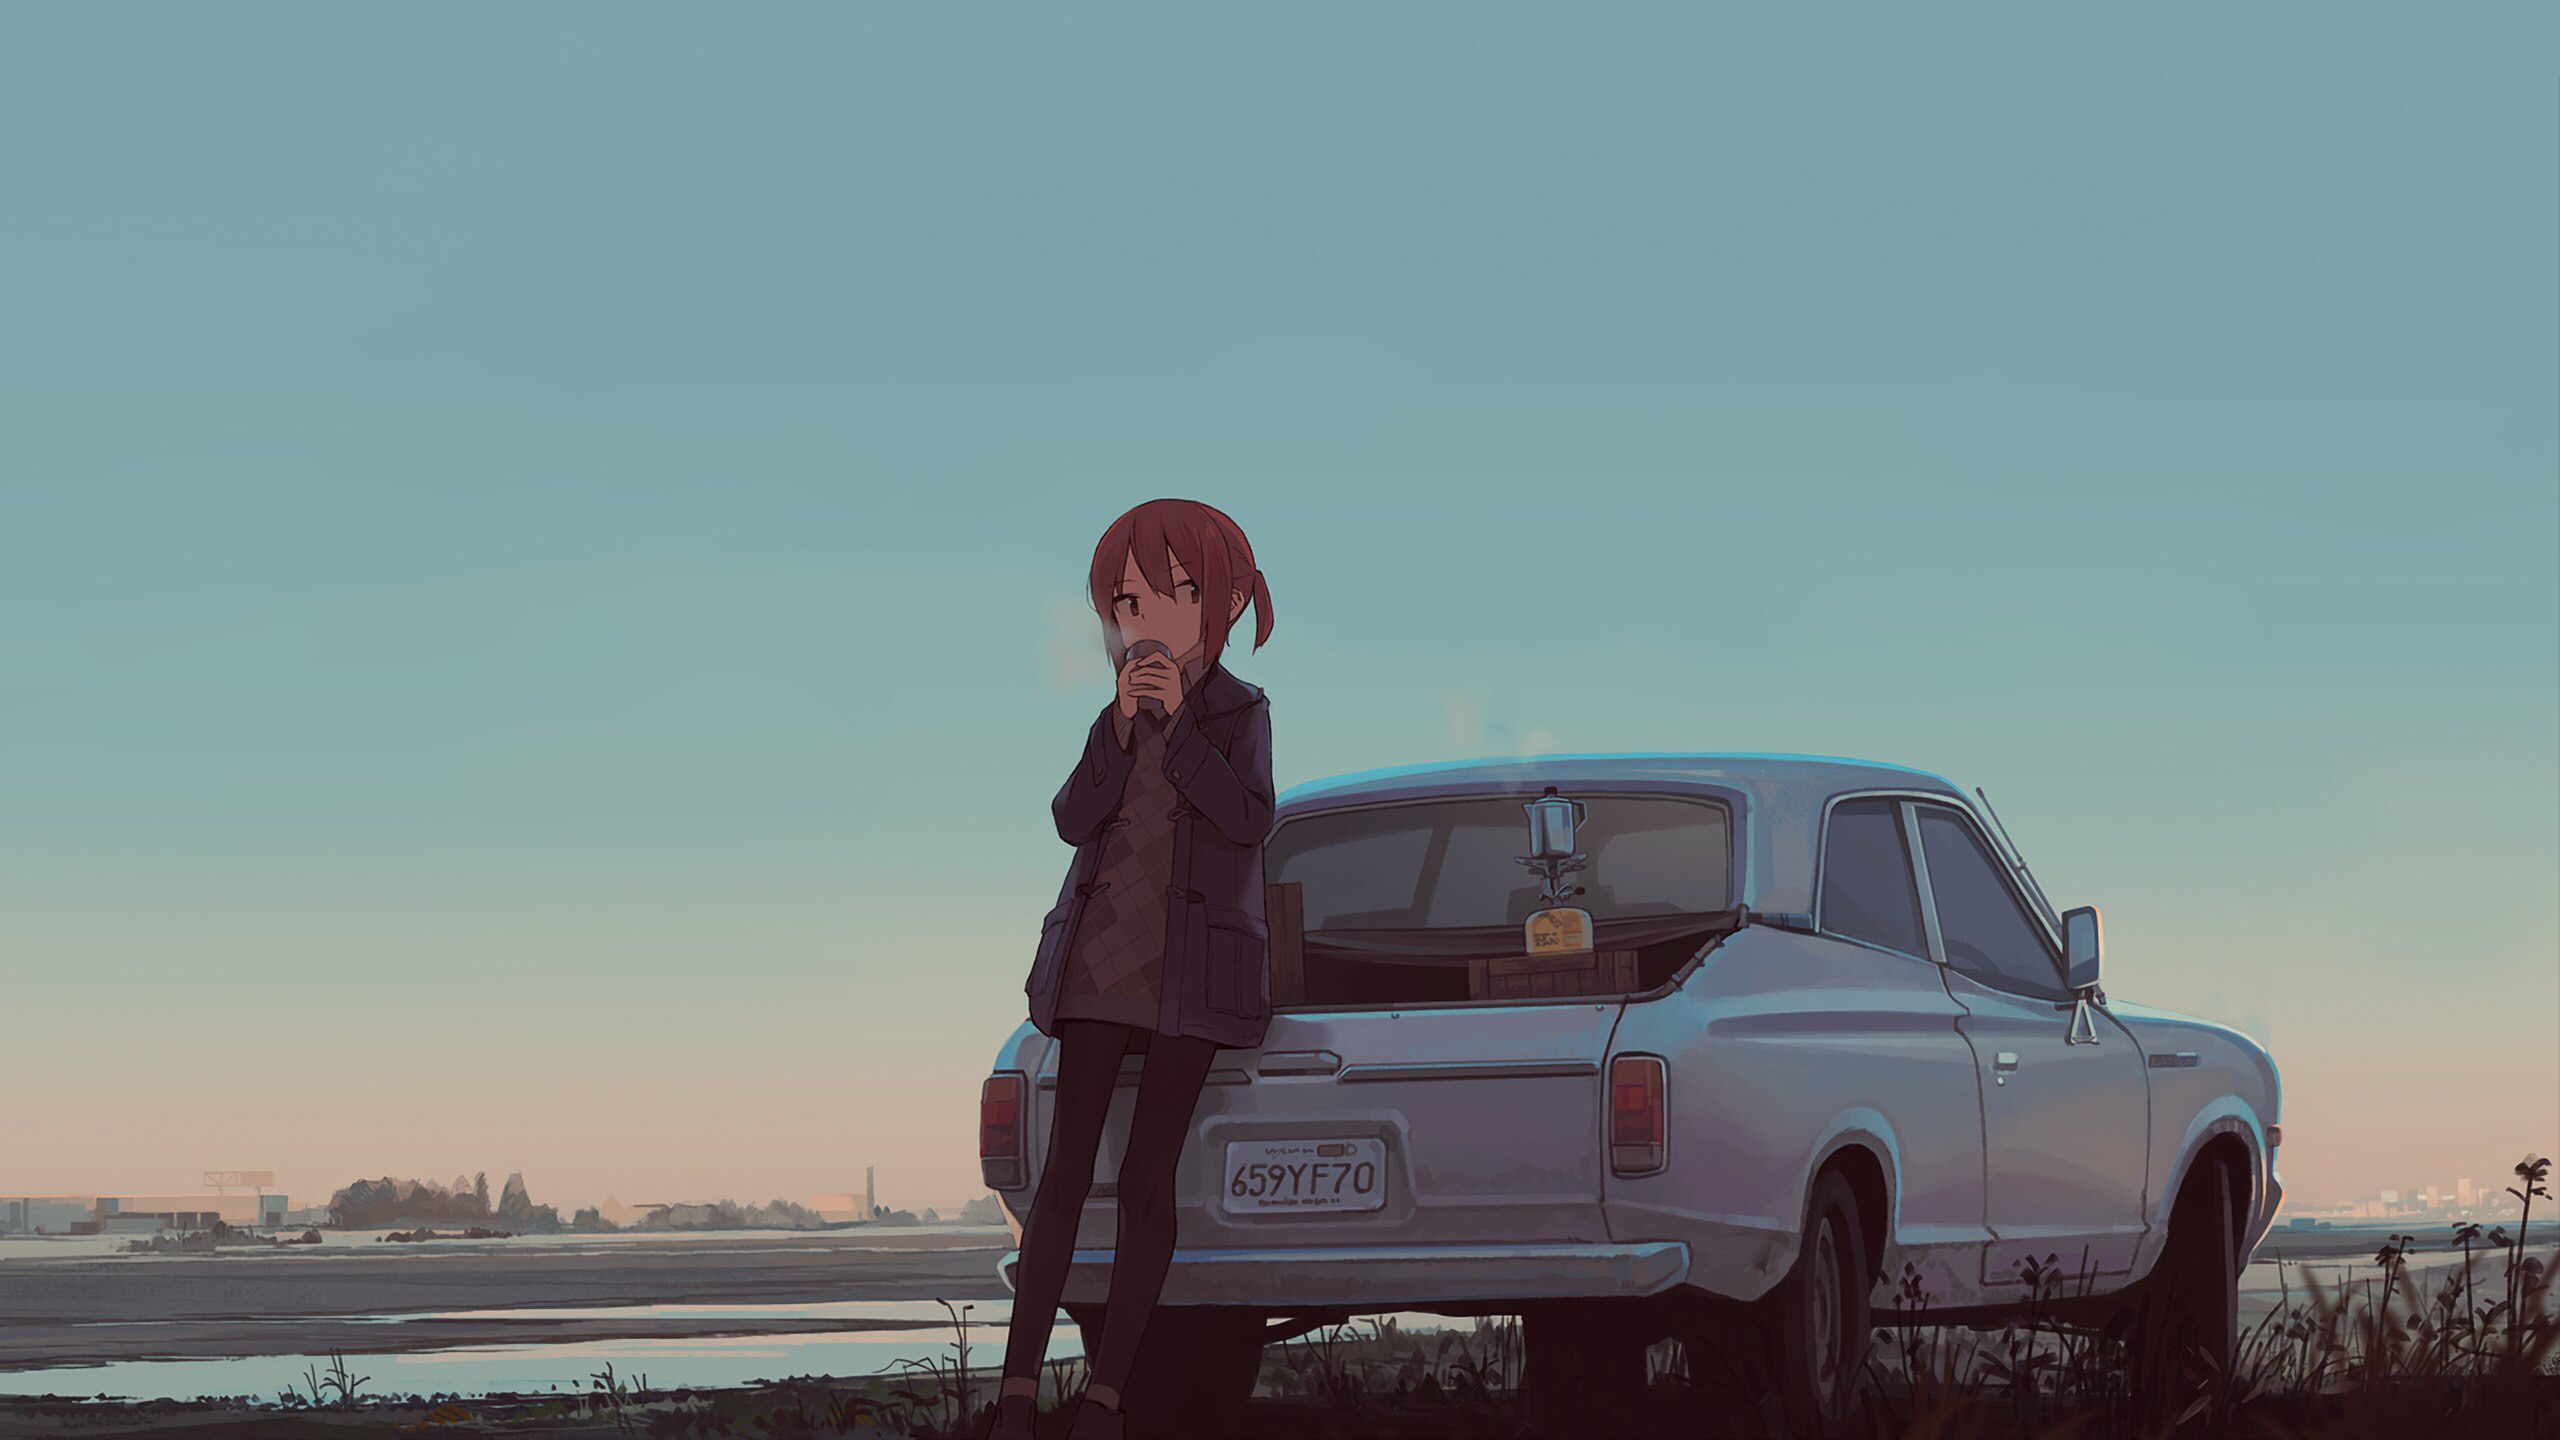 Anime Girls Artwork Car Coffee Datsun 2560x1440